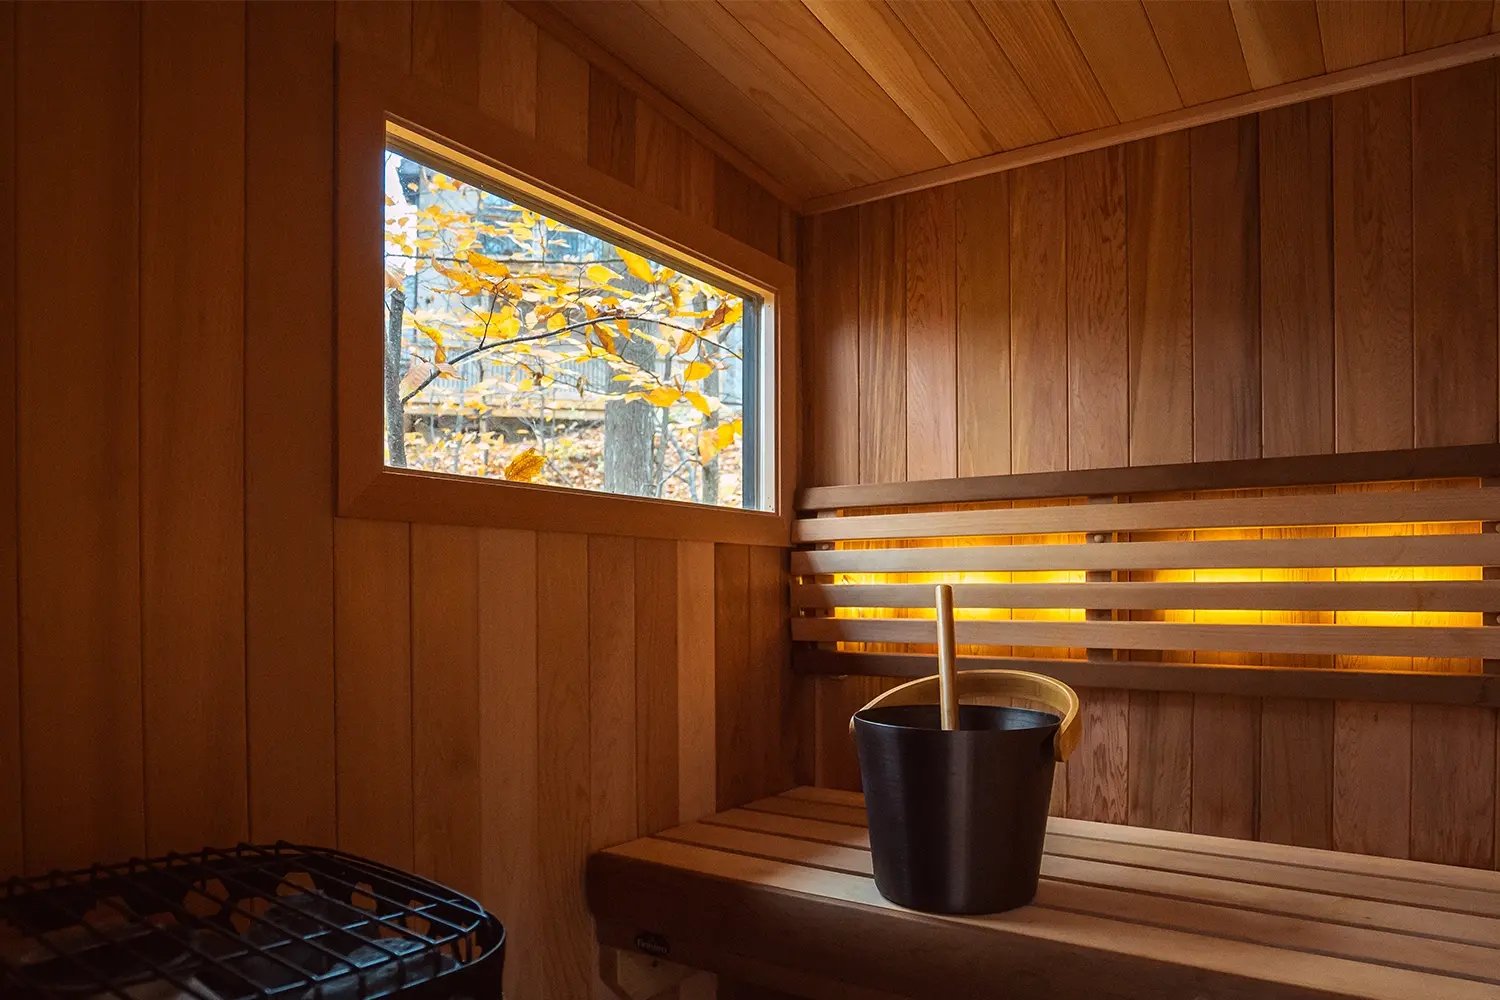 Sauna window details